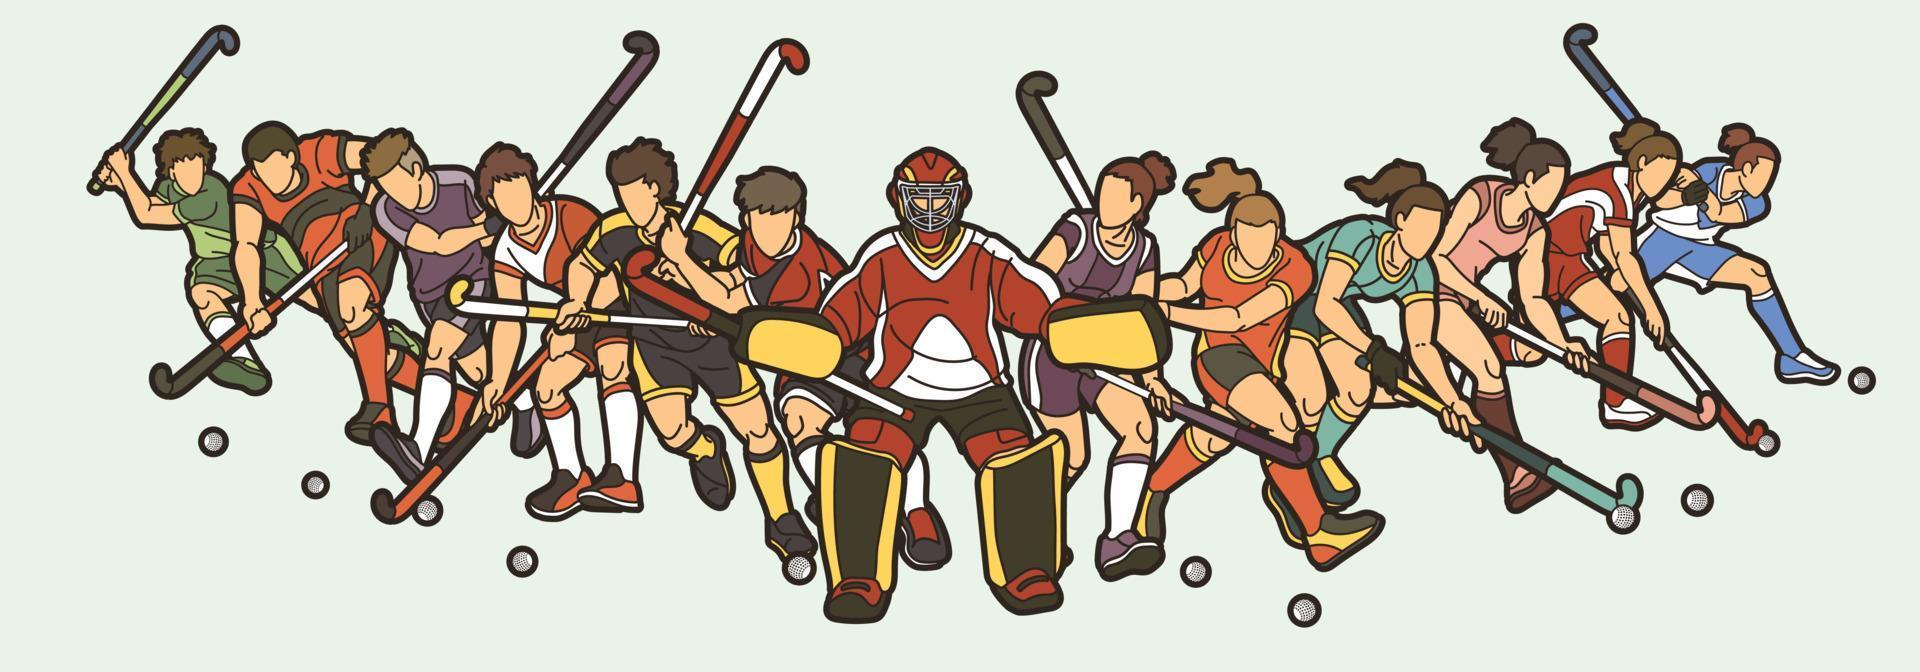 grupo de jugadores masculinos y femeninos de hockey sobre césped acción juntos vector gráfico de dibujos animados